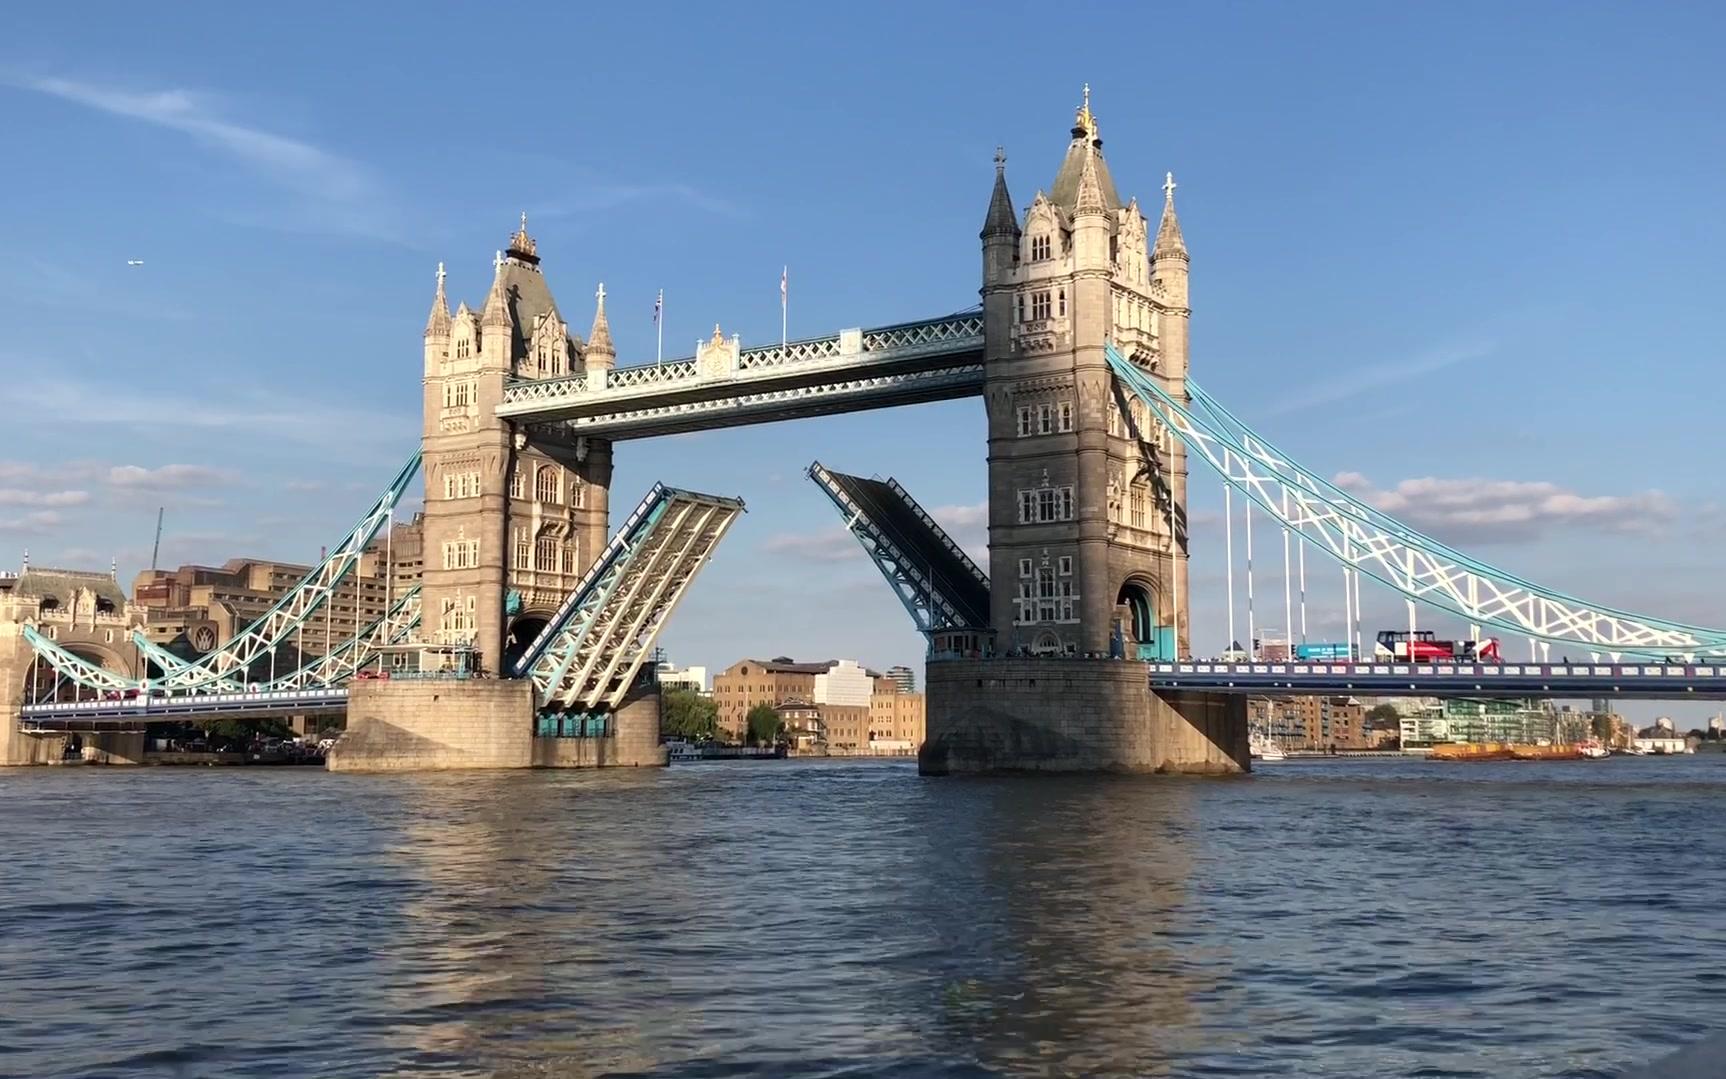 【携程攻略】伦敦伦敦塔桥景点,坐在轮渡的甲板上仰望伦敦塔桥，非常令人振奋。该桥始建于1886年，18…